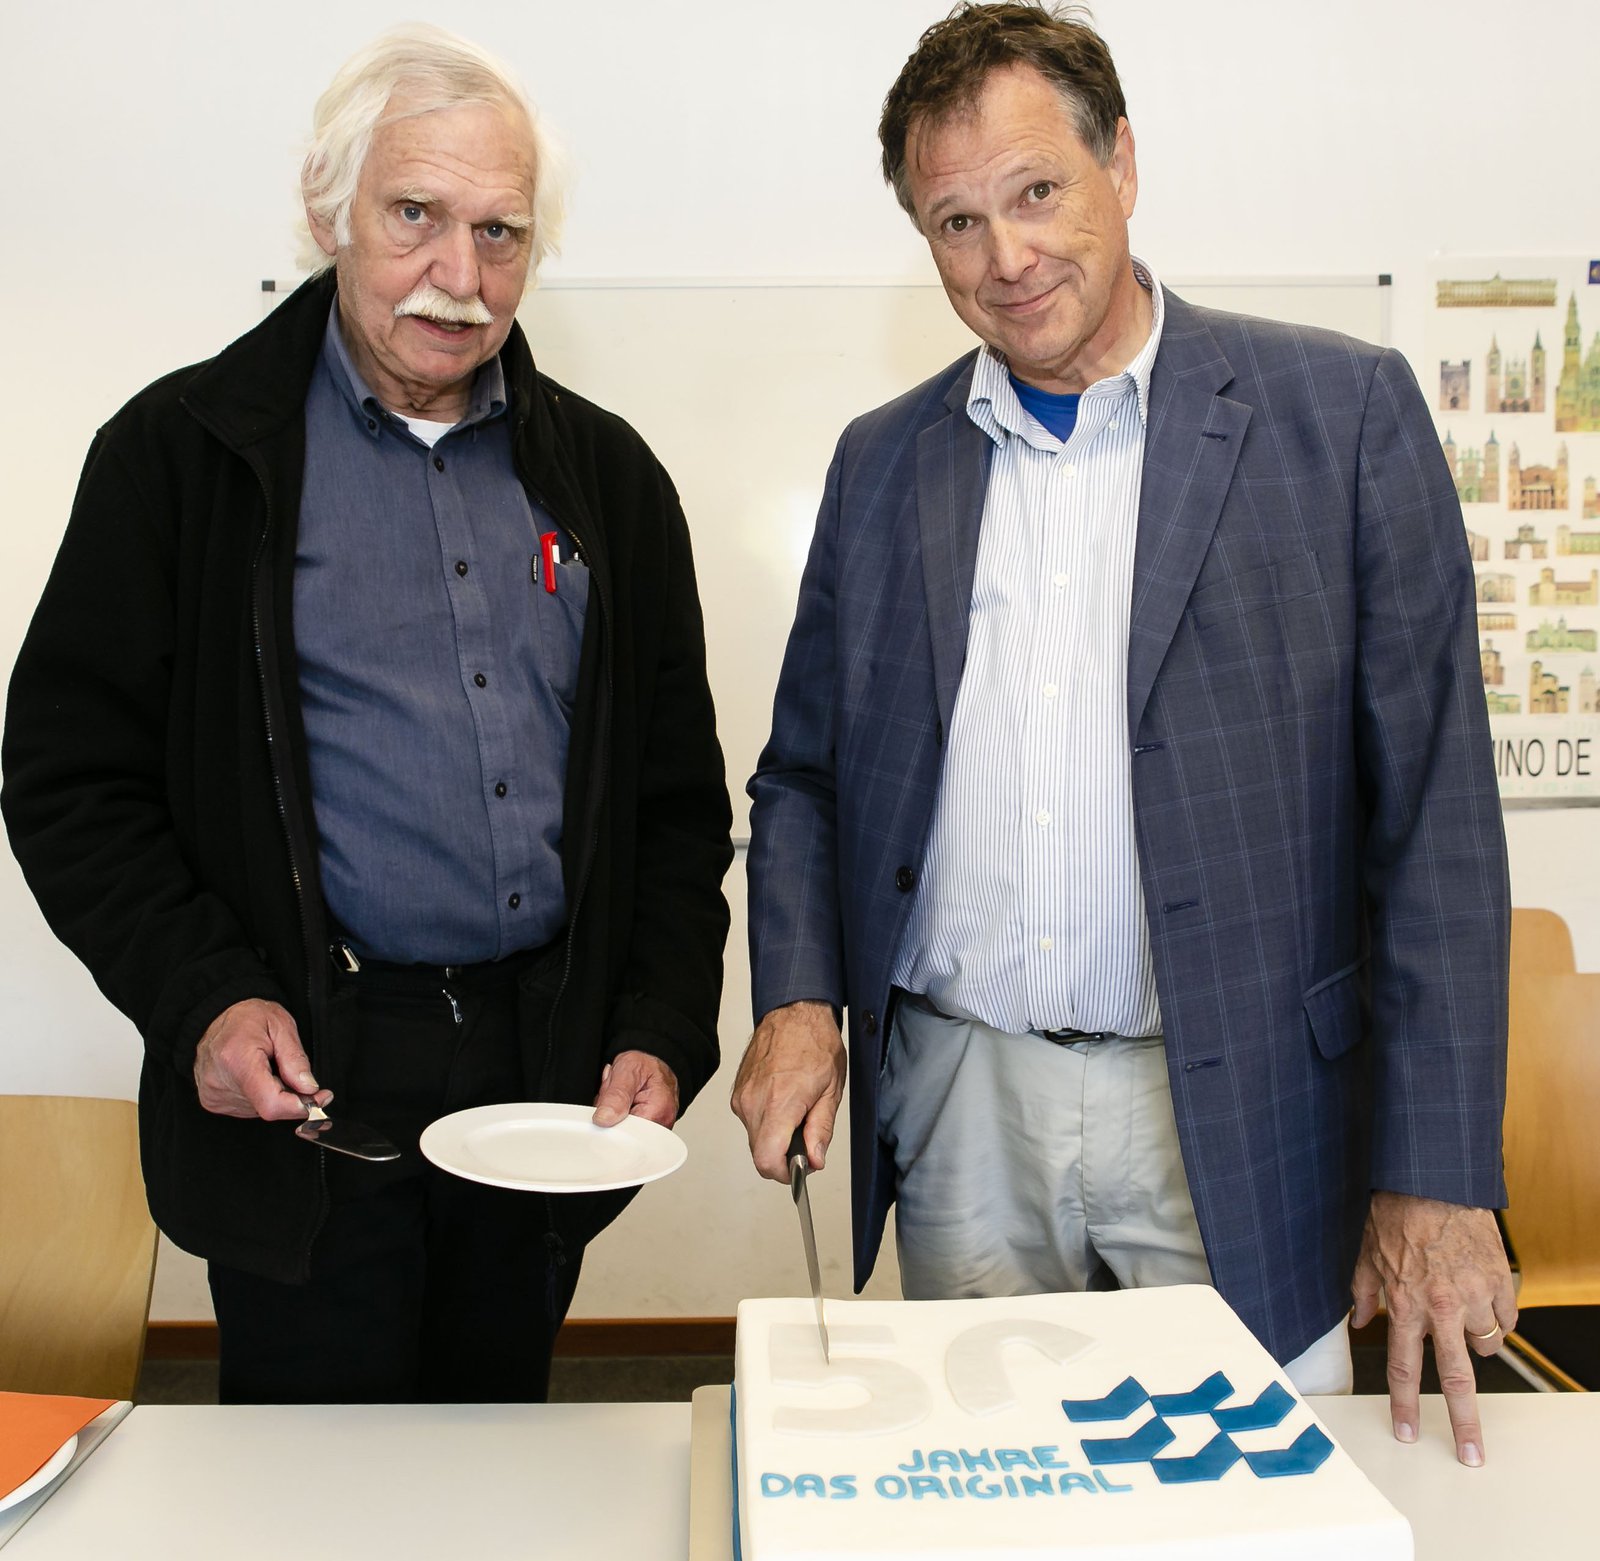 Eine Torte zum Fest durfte natürlich nicht fehlen: Prof. Dr. Udo Beer (r.) und Prof. Dr. Jürgen Spieckhoff schnitten sie im Alumni-Café an. Foto: Molter